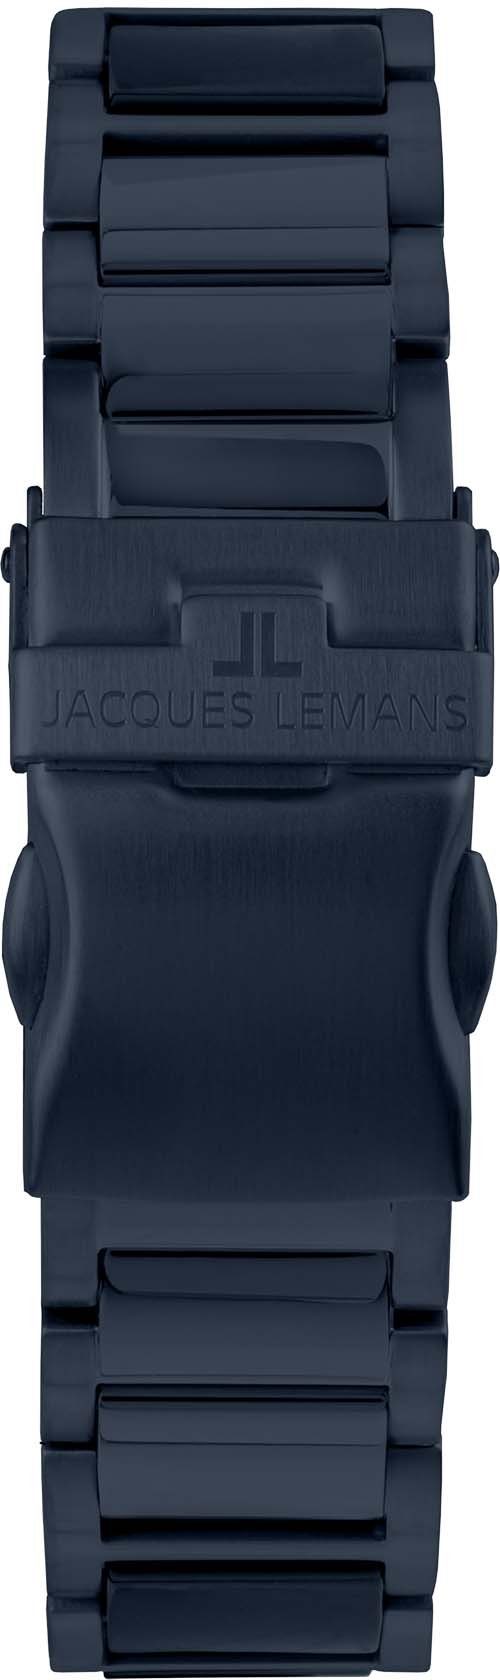 Keramikuhr Lemans Jacques 42-10E Liverpool,